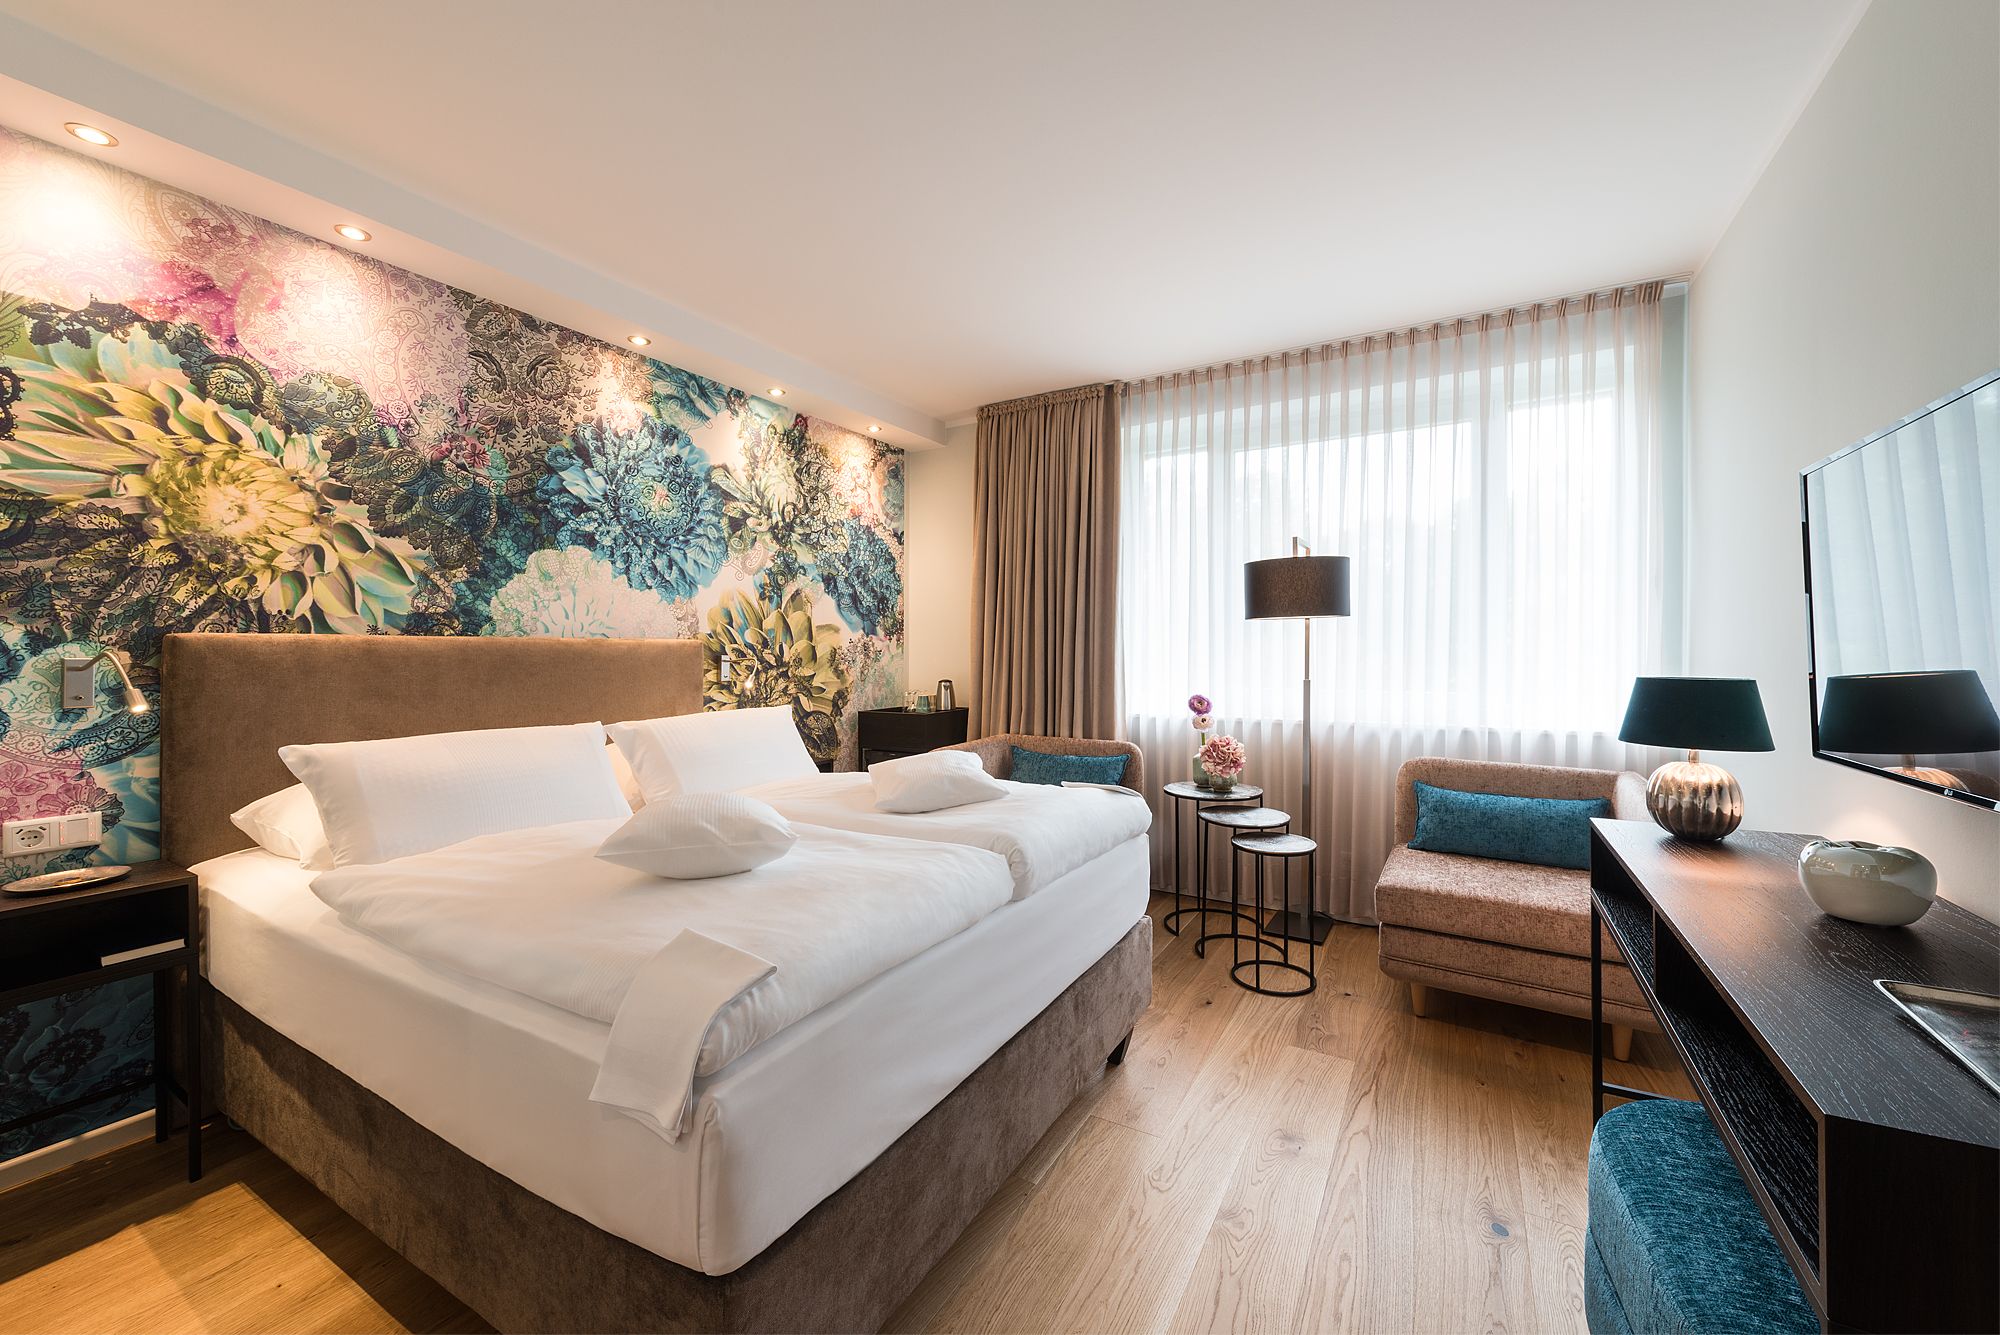 Zimmer der Kategorie Auszeit - Beispiel - Schlafbereich - Hotel Munte am Stadtwald - Bremen